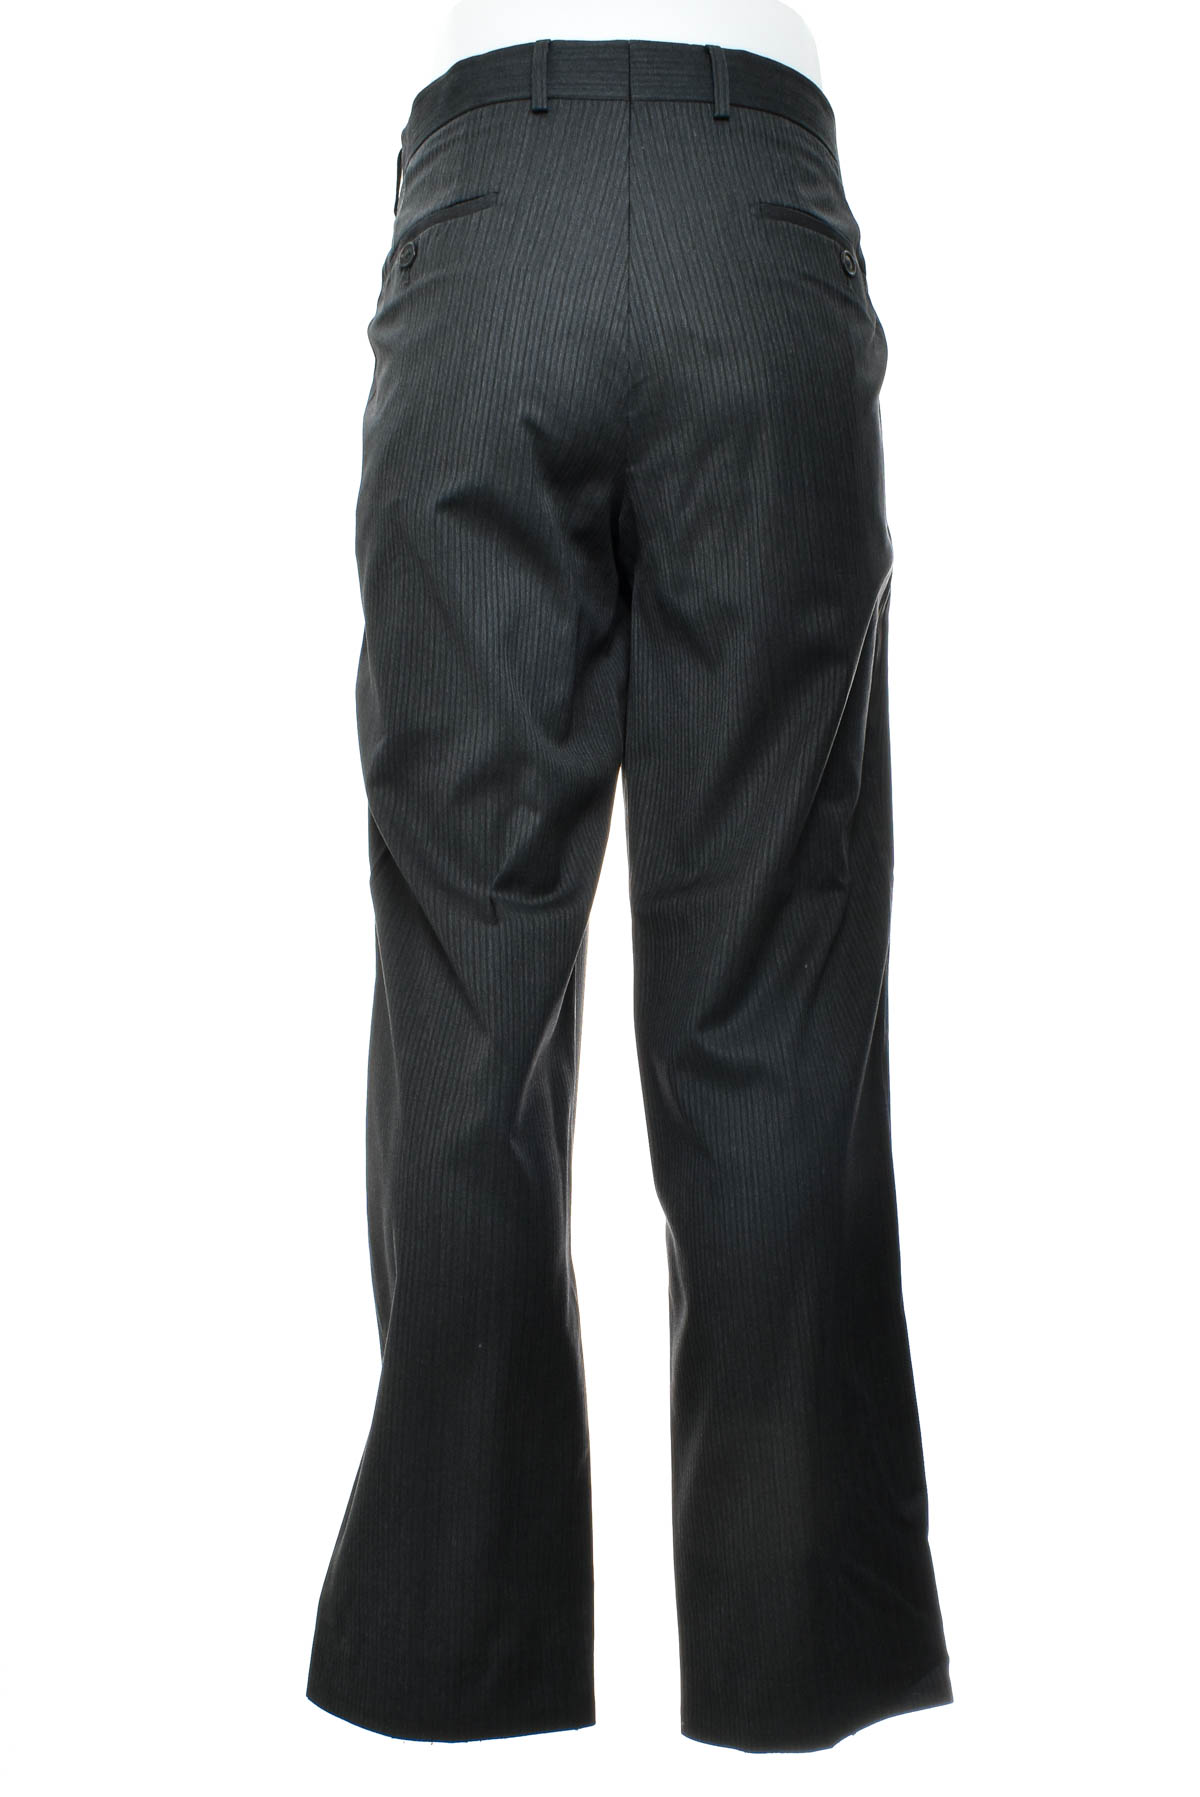 Ανδρικά παντελόνια - HUGO BOSS - 1